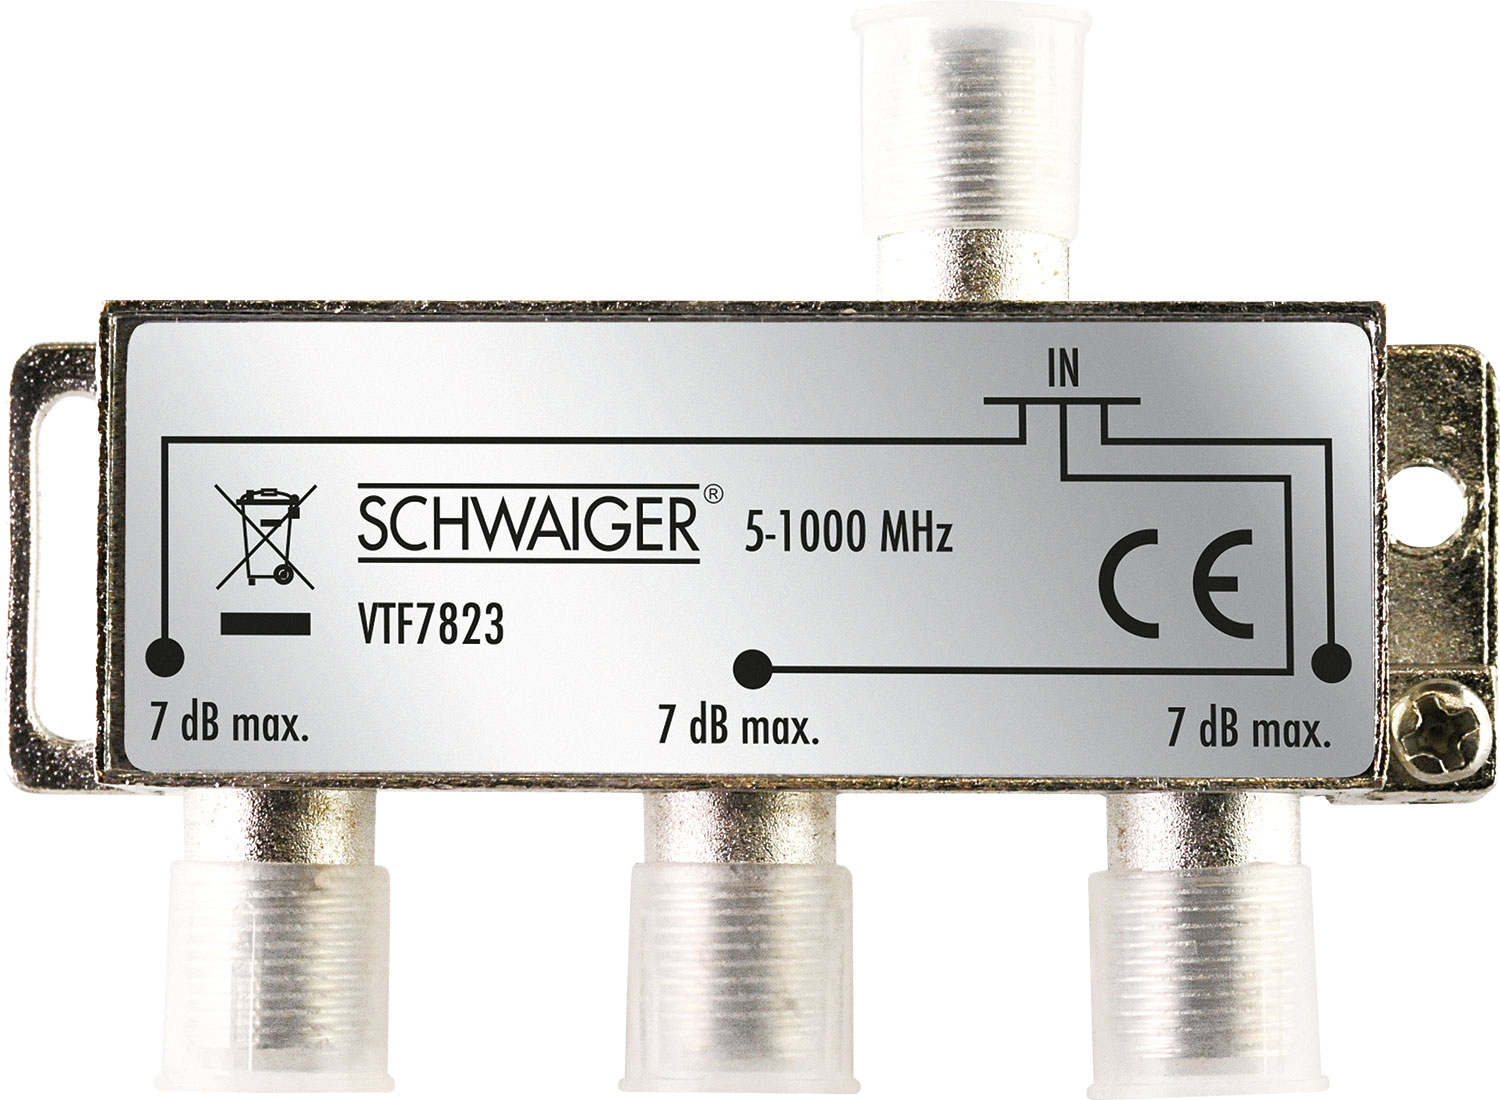 SCHWAIGER -VTF7823 531- und Kabel- dB) für Antennenanlagen (7 3-fach Verteiler